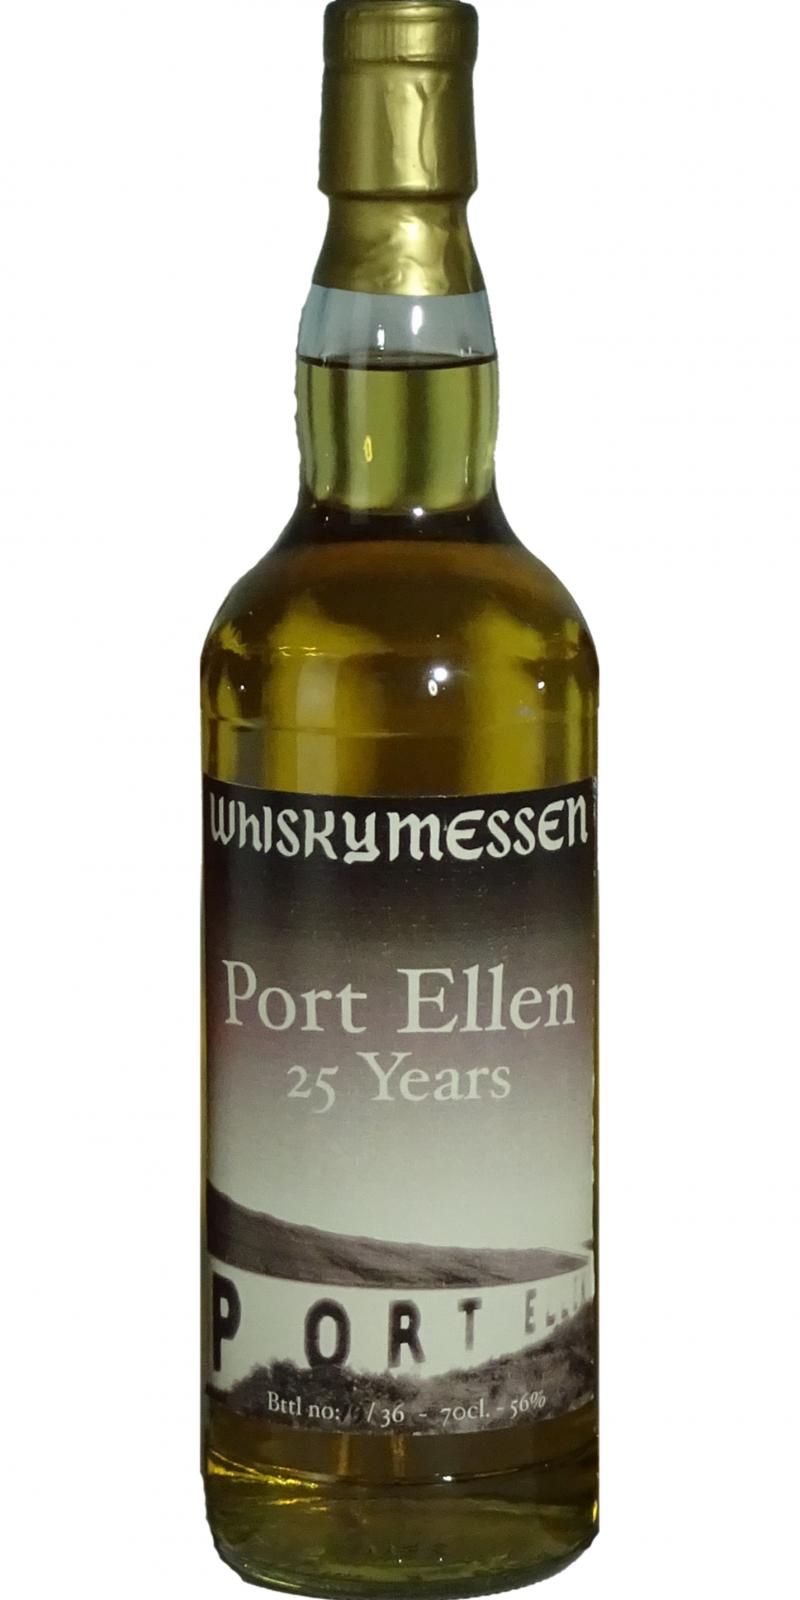 Port Ellen 25yo Wm.dk Whiskymessen Denmark 56% 700ml